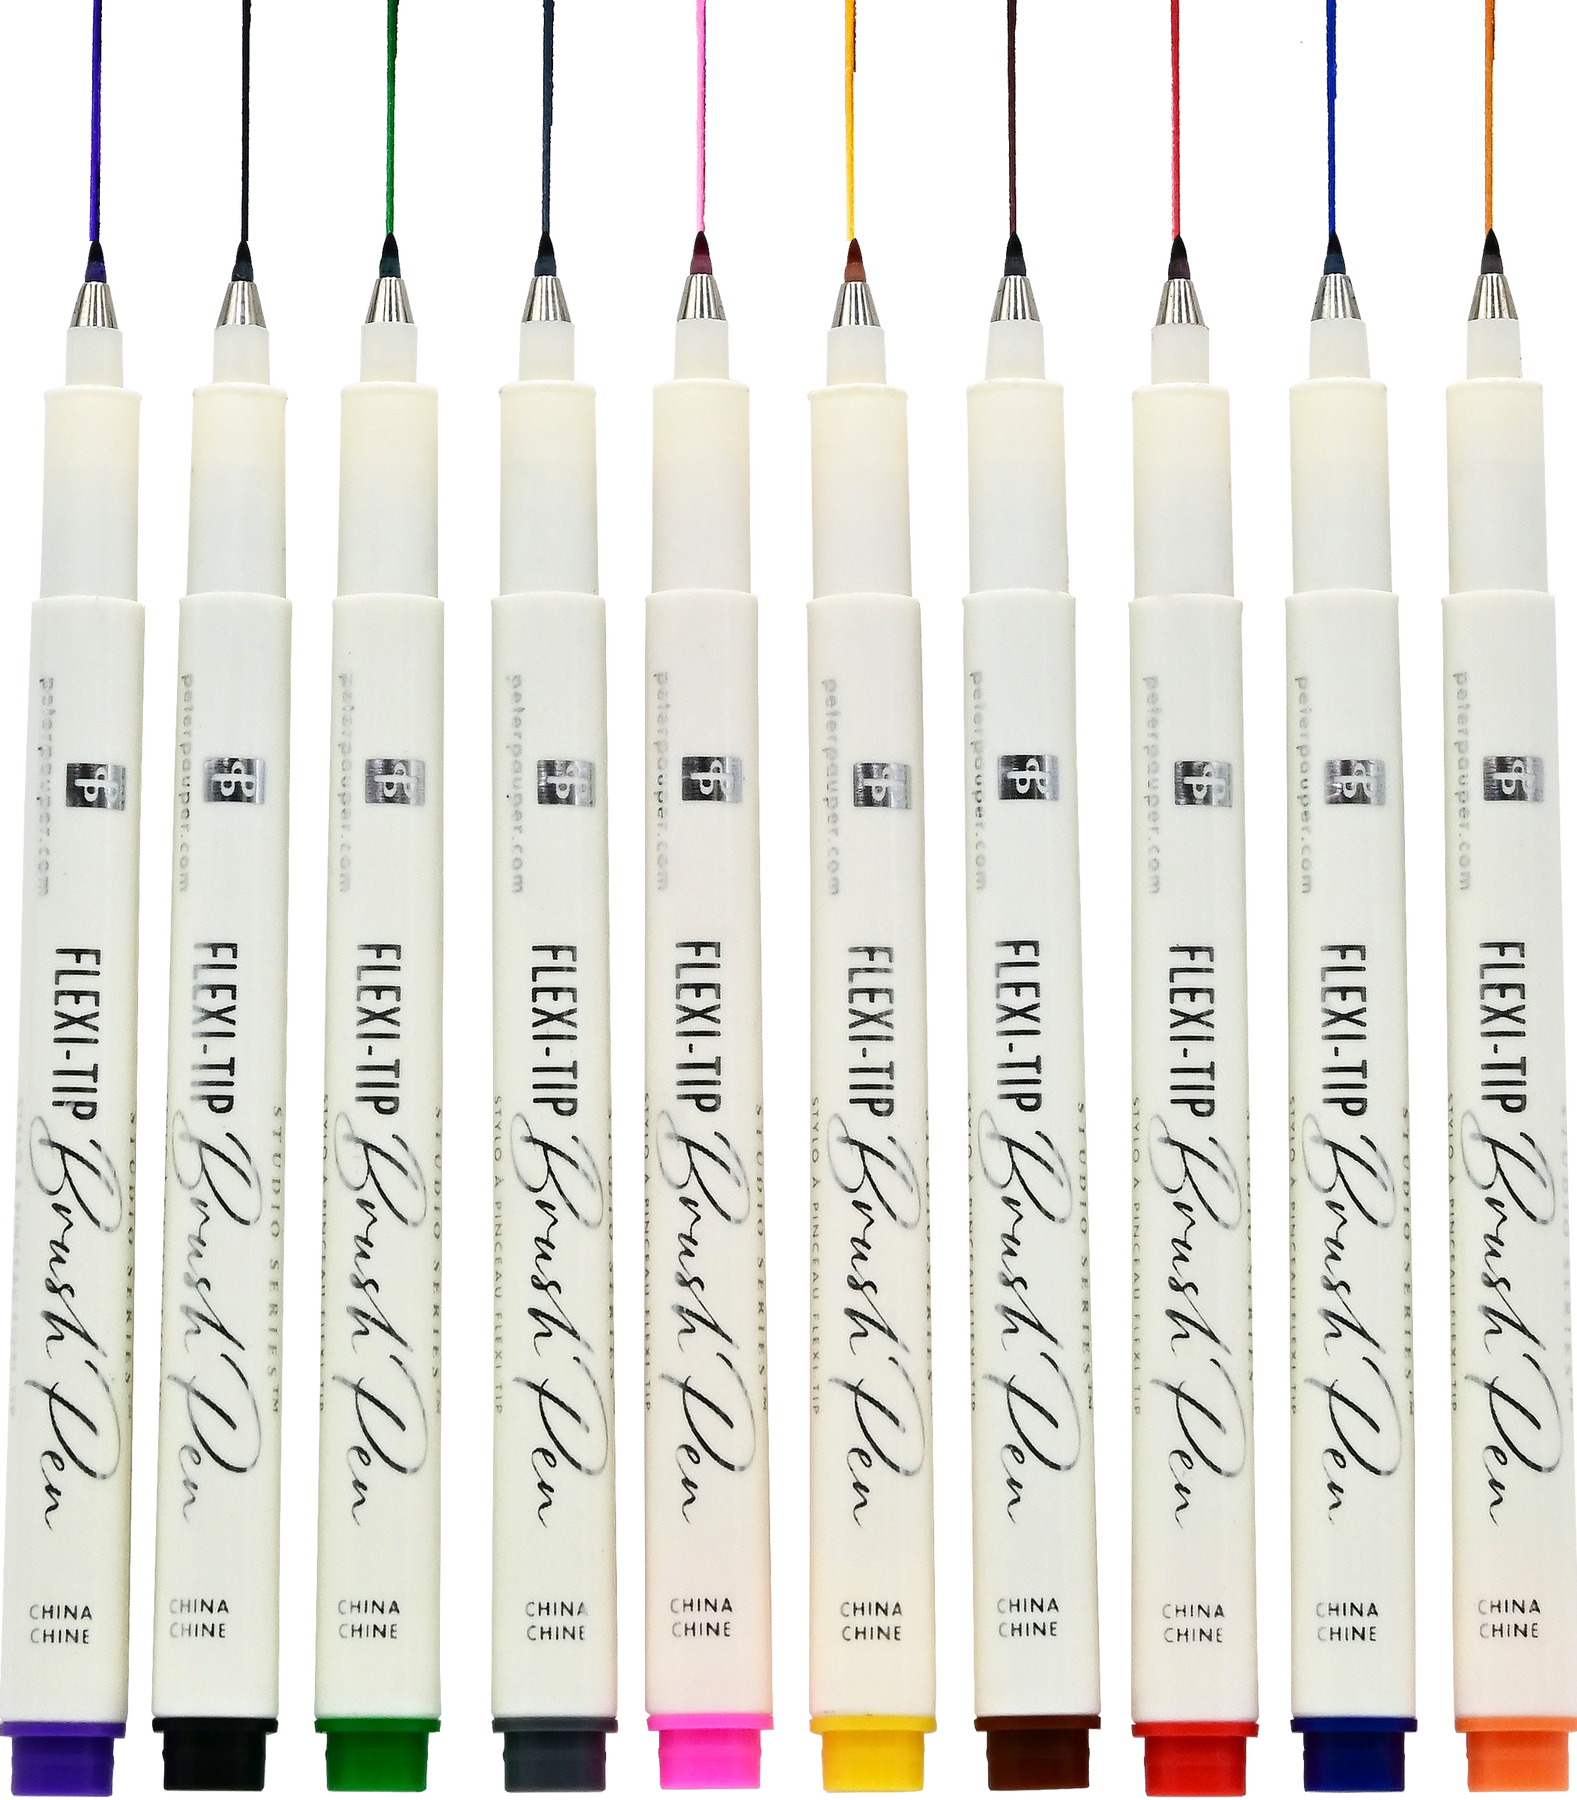 Flexi-Tip Brush Pens (Set of 10)